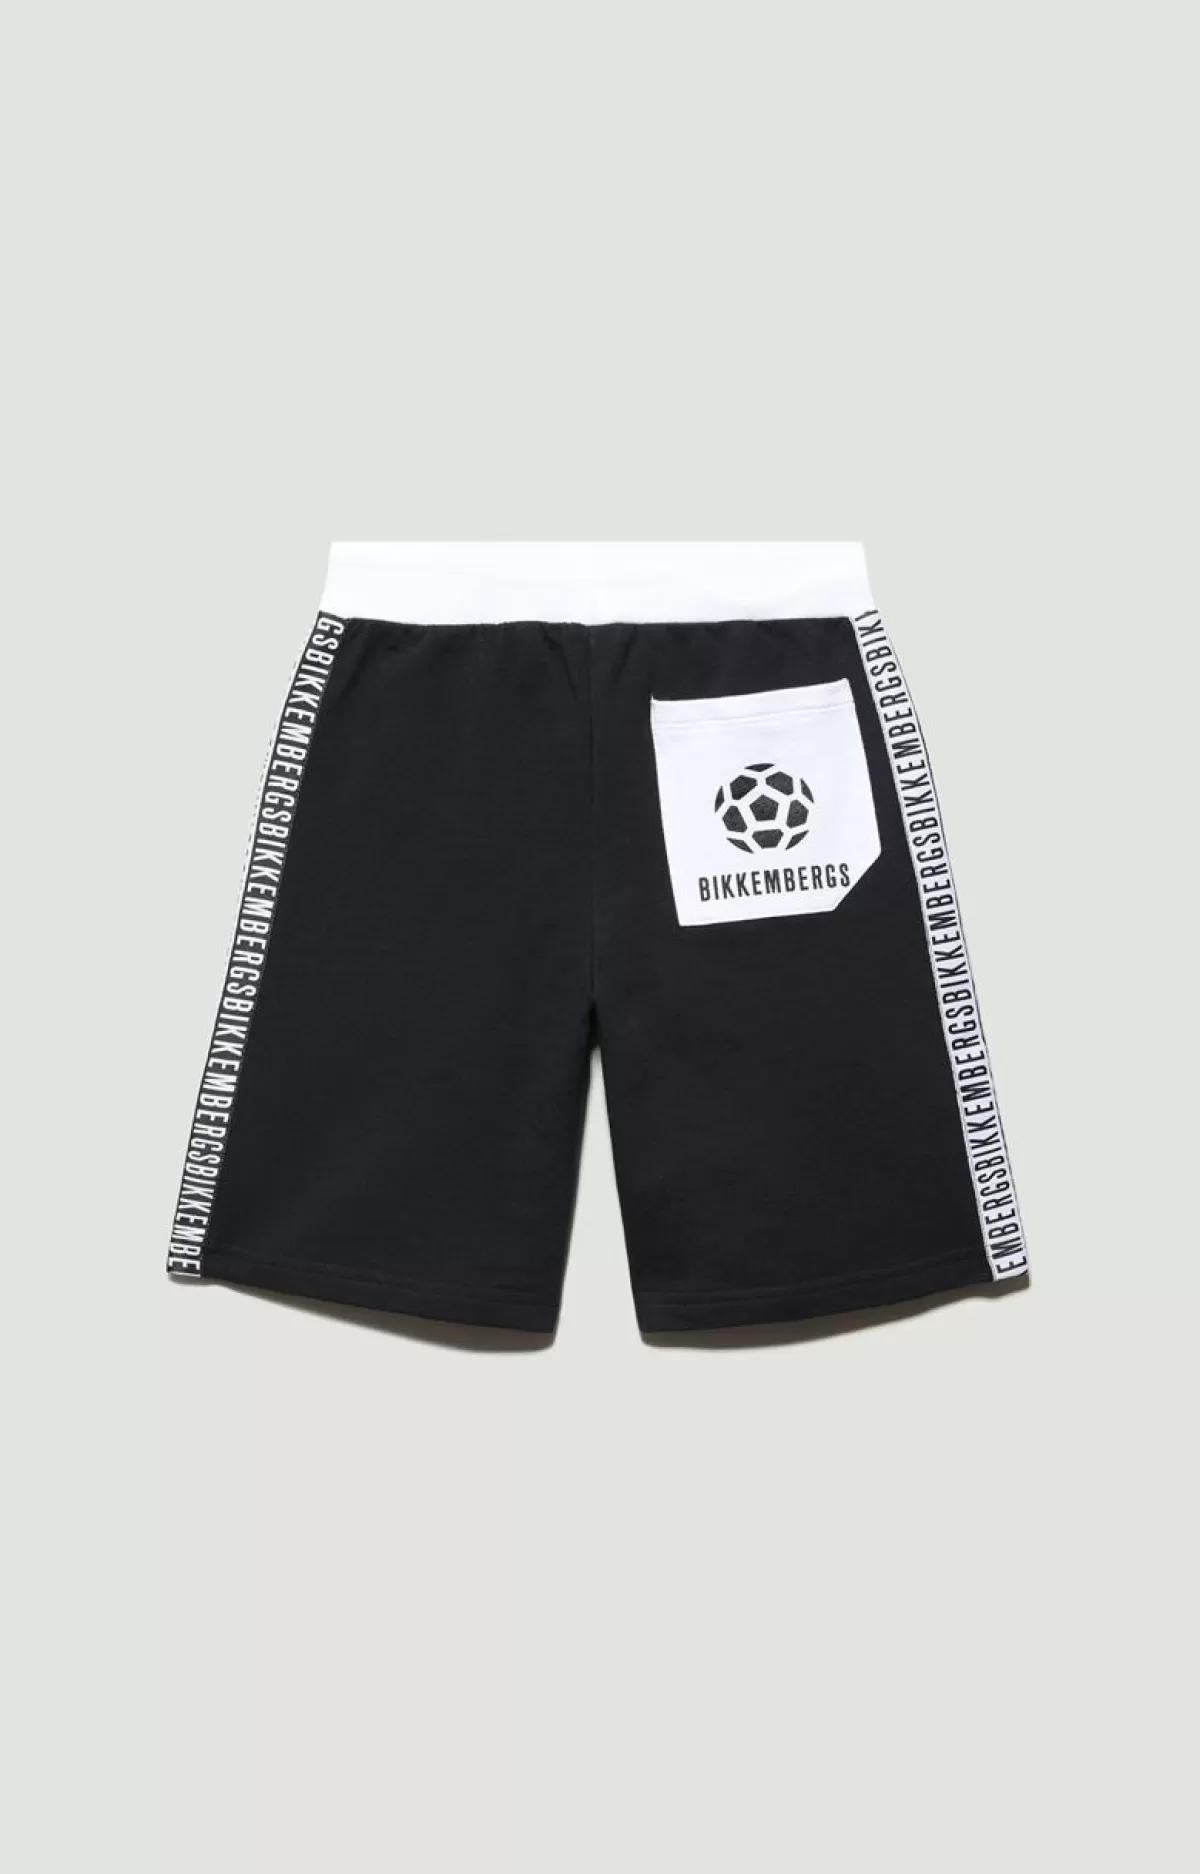 Bikkembergs Boys' Short - Soccer Print Black Clearance